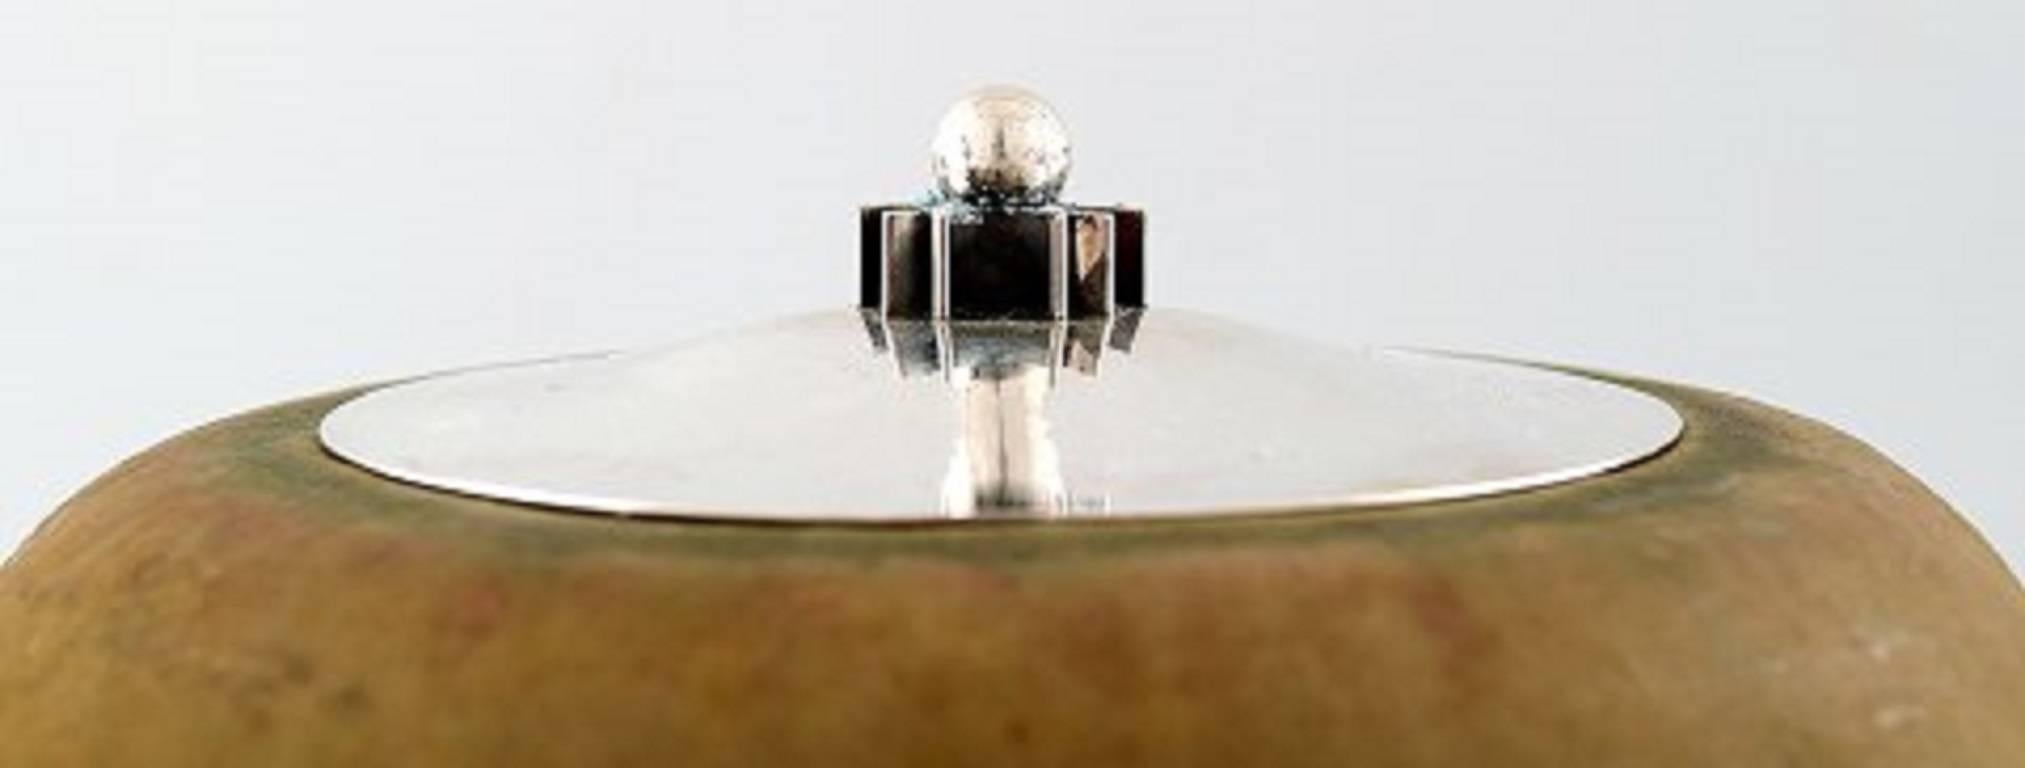 Patrick Nordstrøm for Royal Copenhagen Pottery Jar with Sterling Silver Lid 2